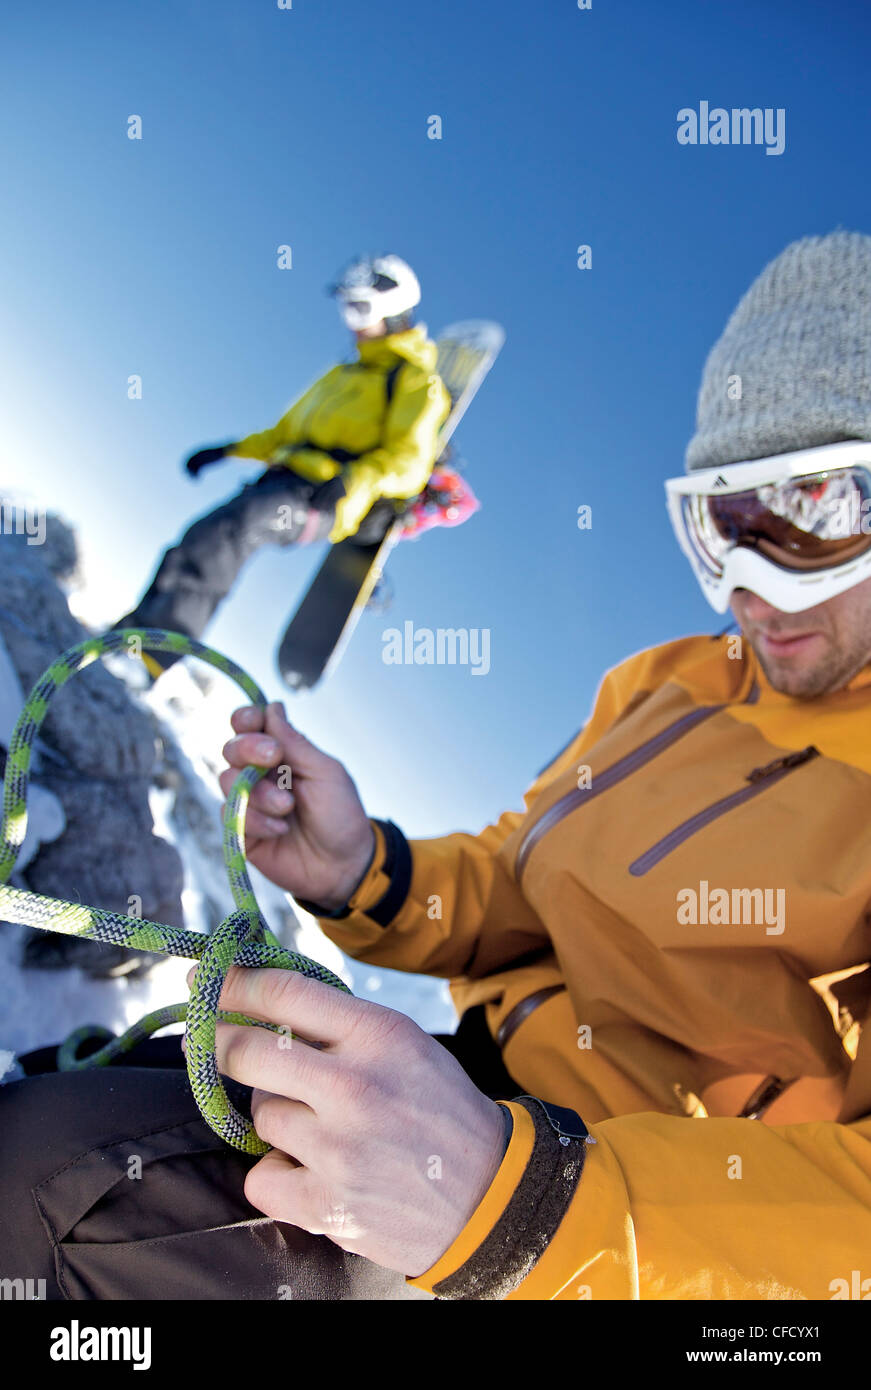 Snowboarder preparing a climbing rope, Oberjoch, Bad Hindelang, Bavaria, Germany Stock Photo